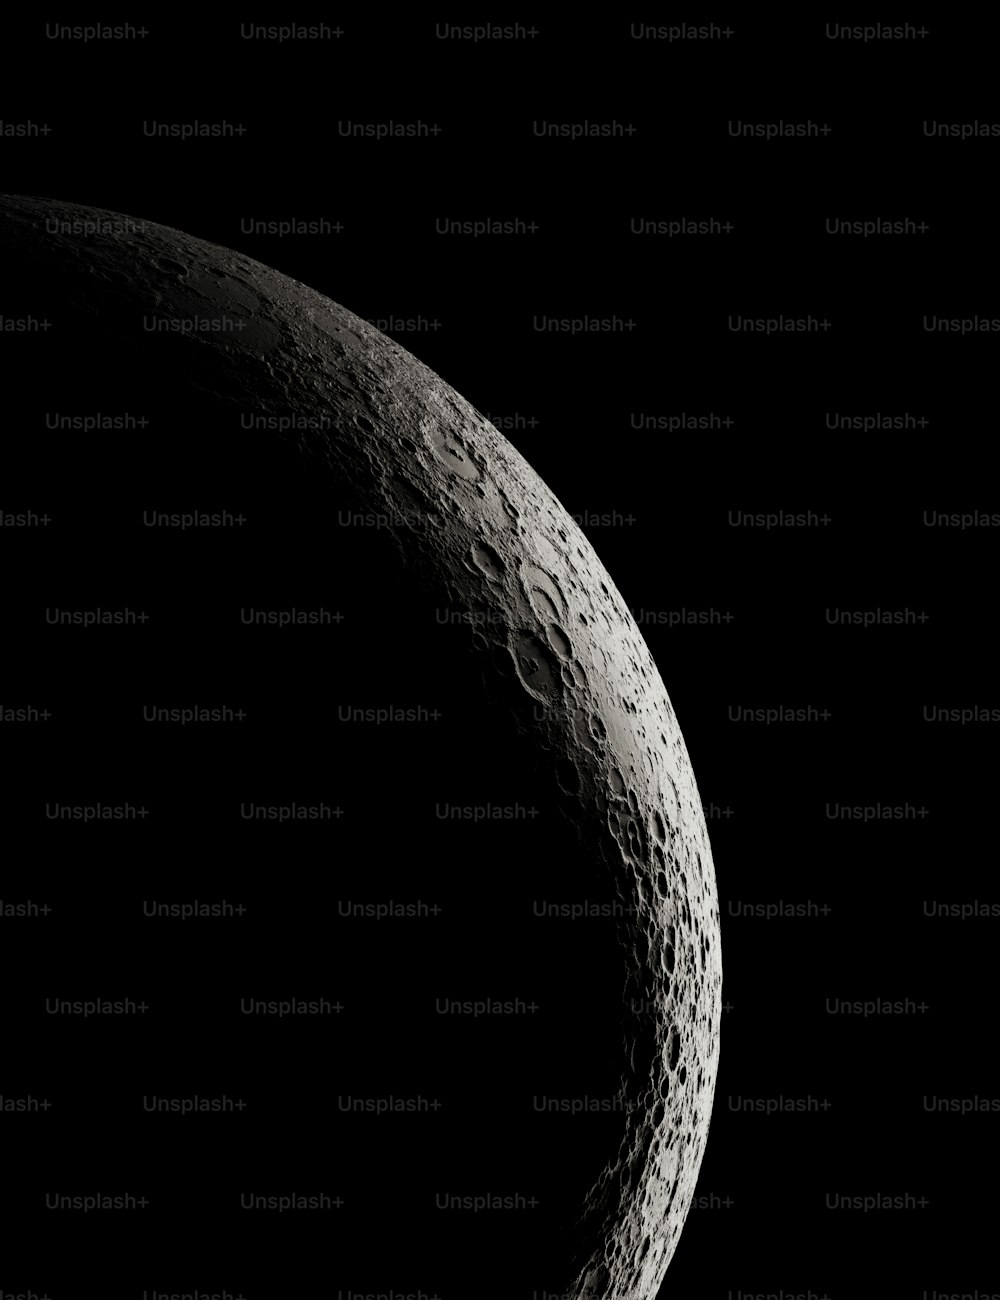 nasa photos of black moon